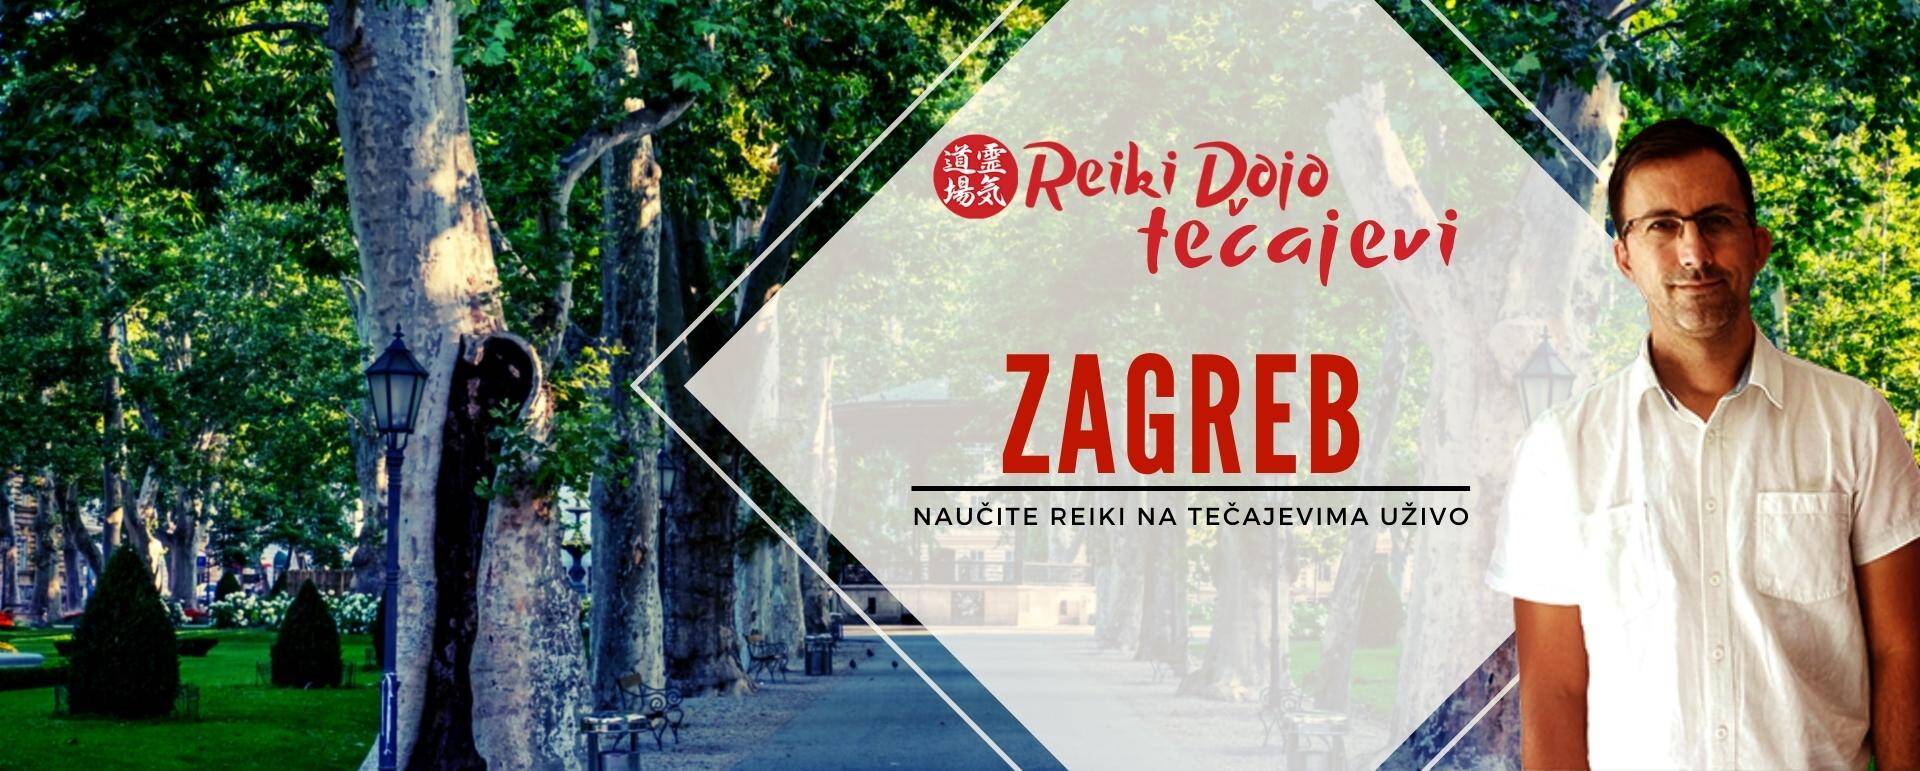 Reiki tečajevi Zagreb